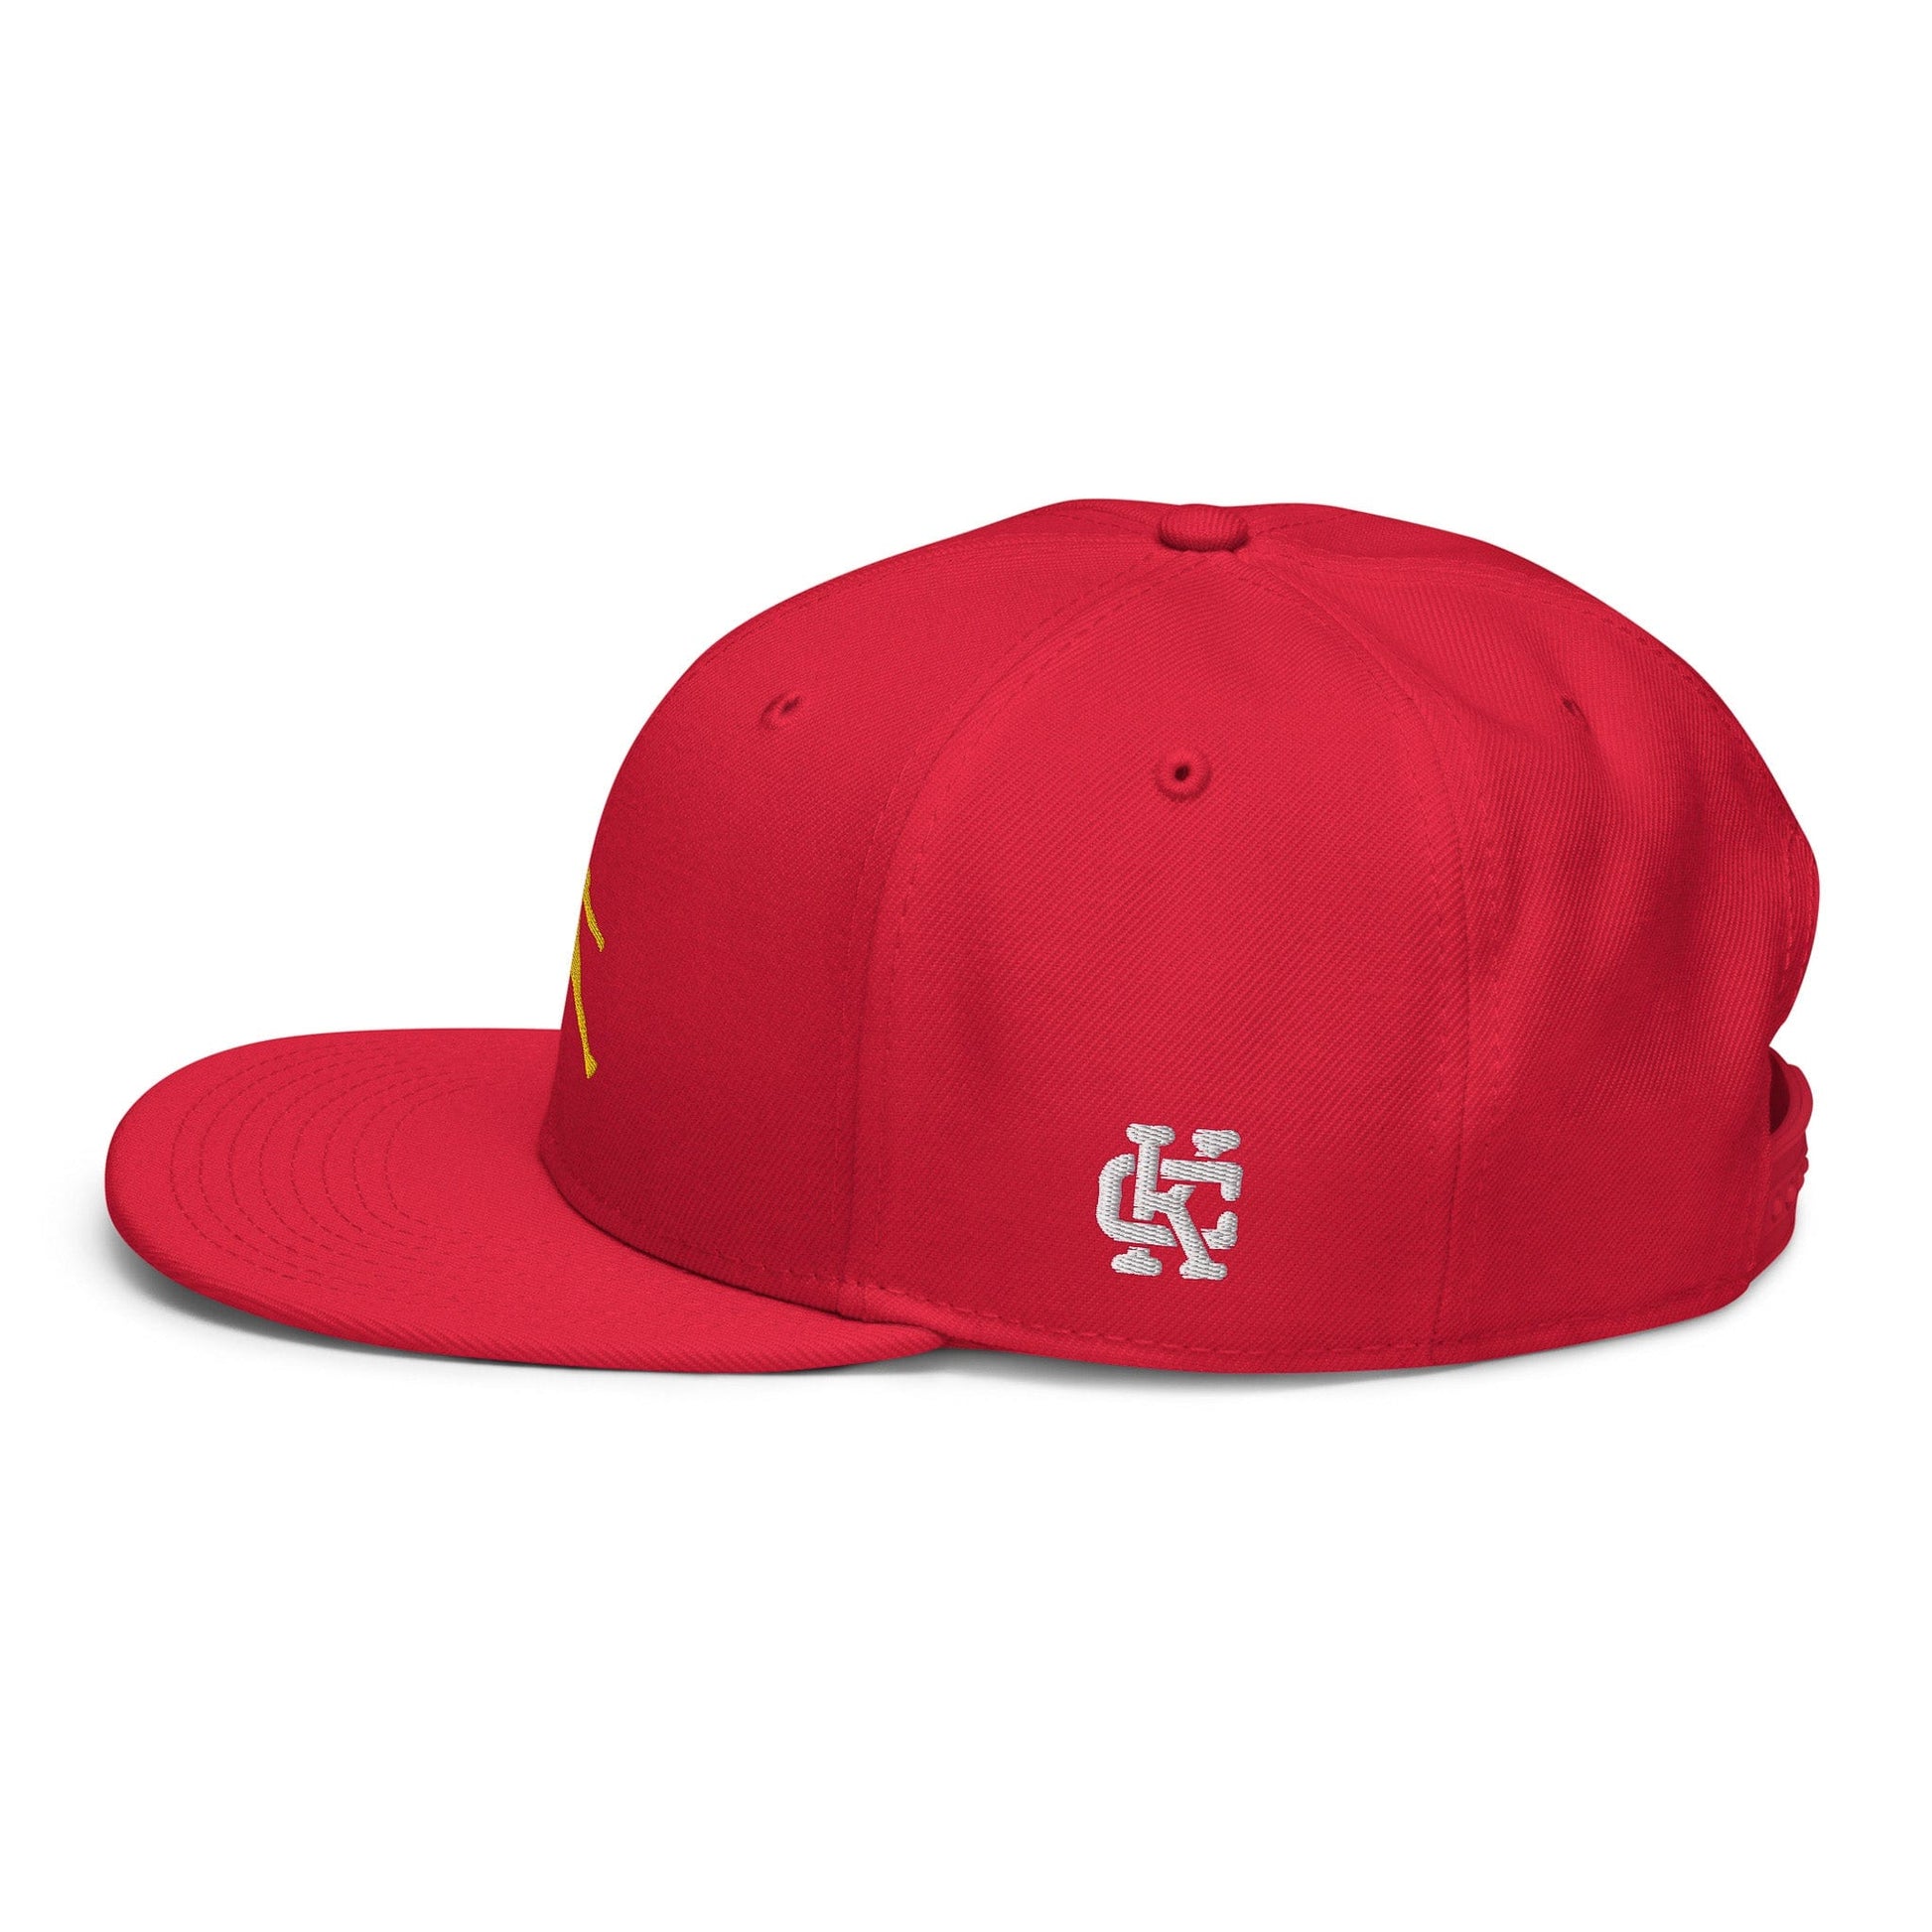 KC SWag Kansas City Chiefs Red Air Mahomes Flat Snapback hat